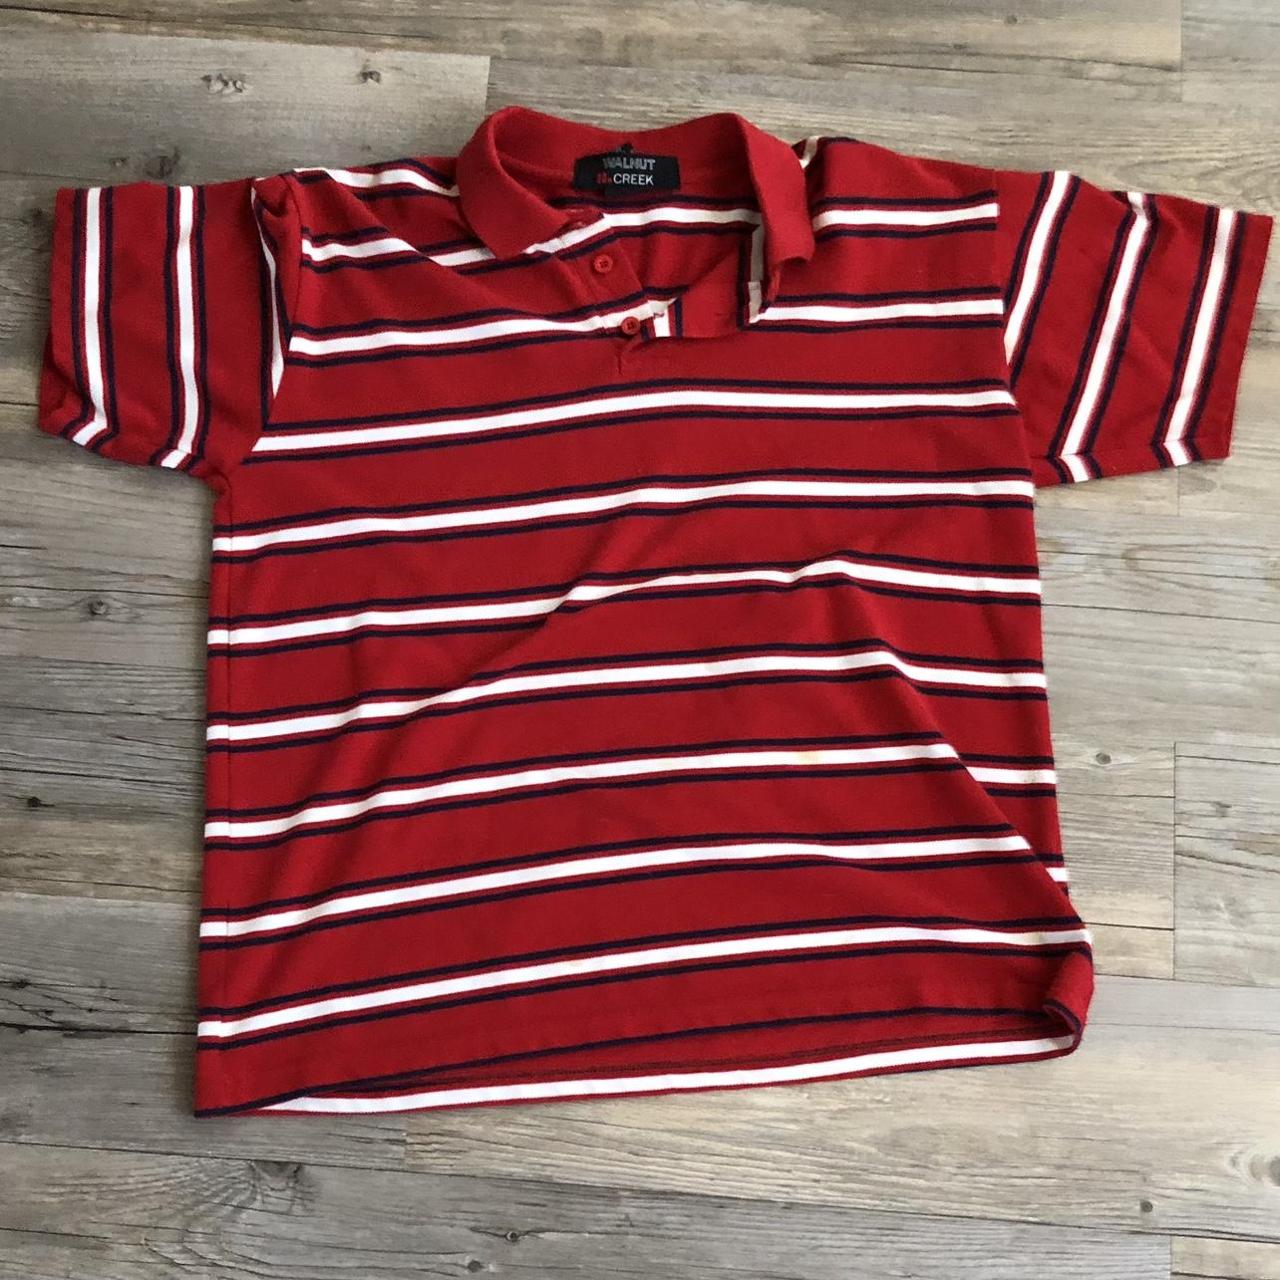 Medium striped polo shirt. - Depop